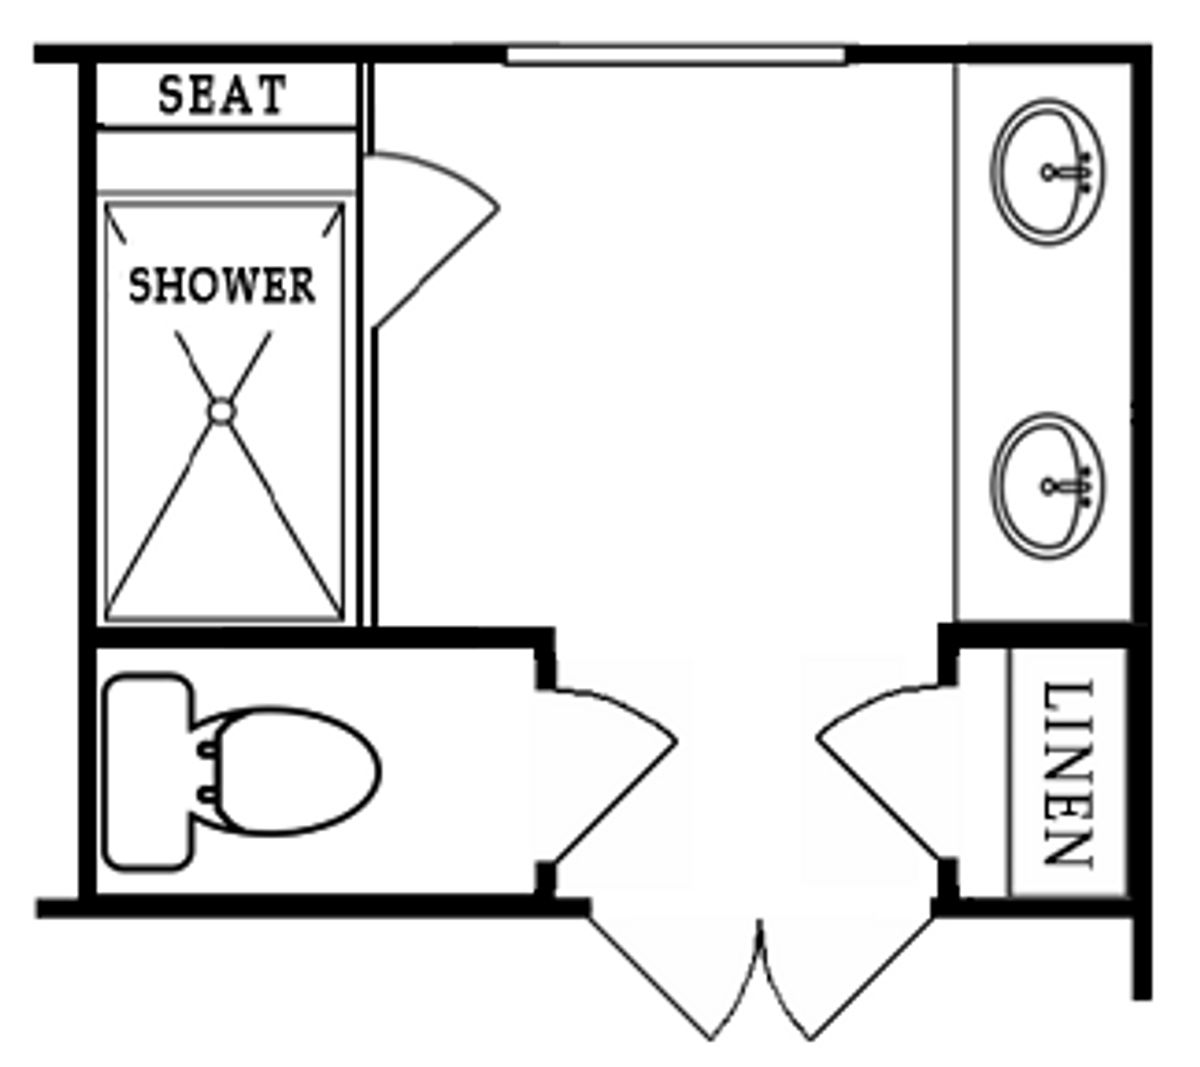 Second Floor Plan | Optional Venetian Owner's Bath